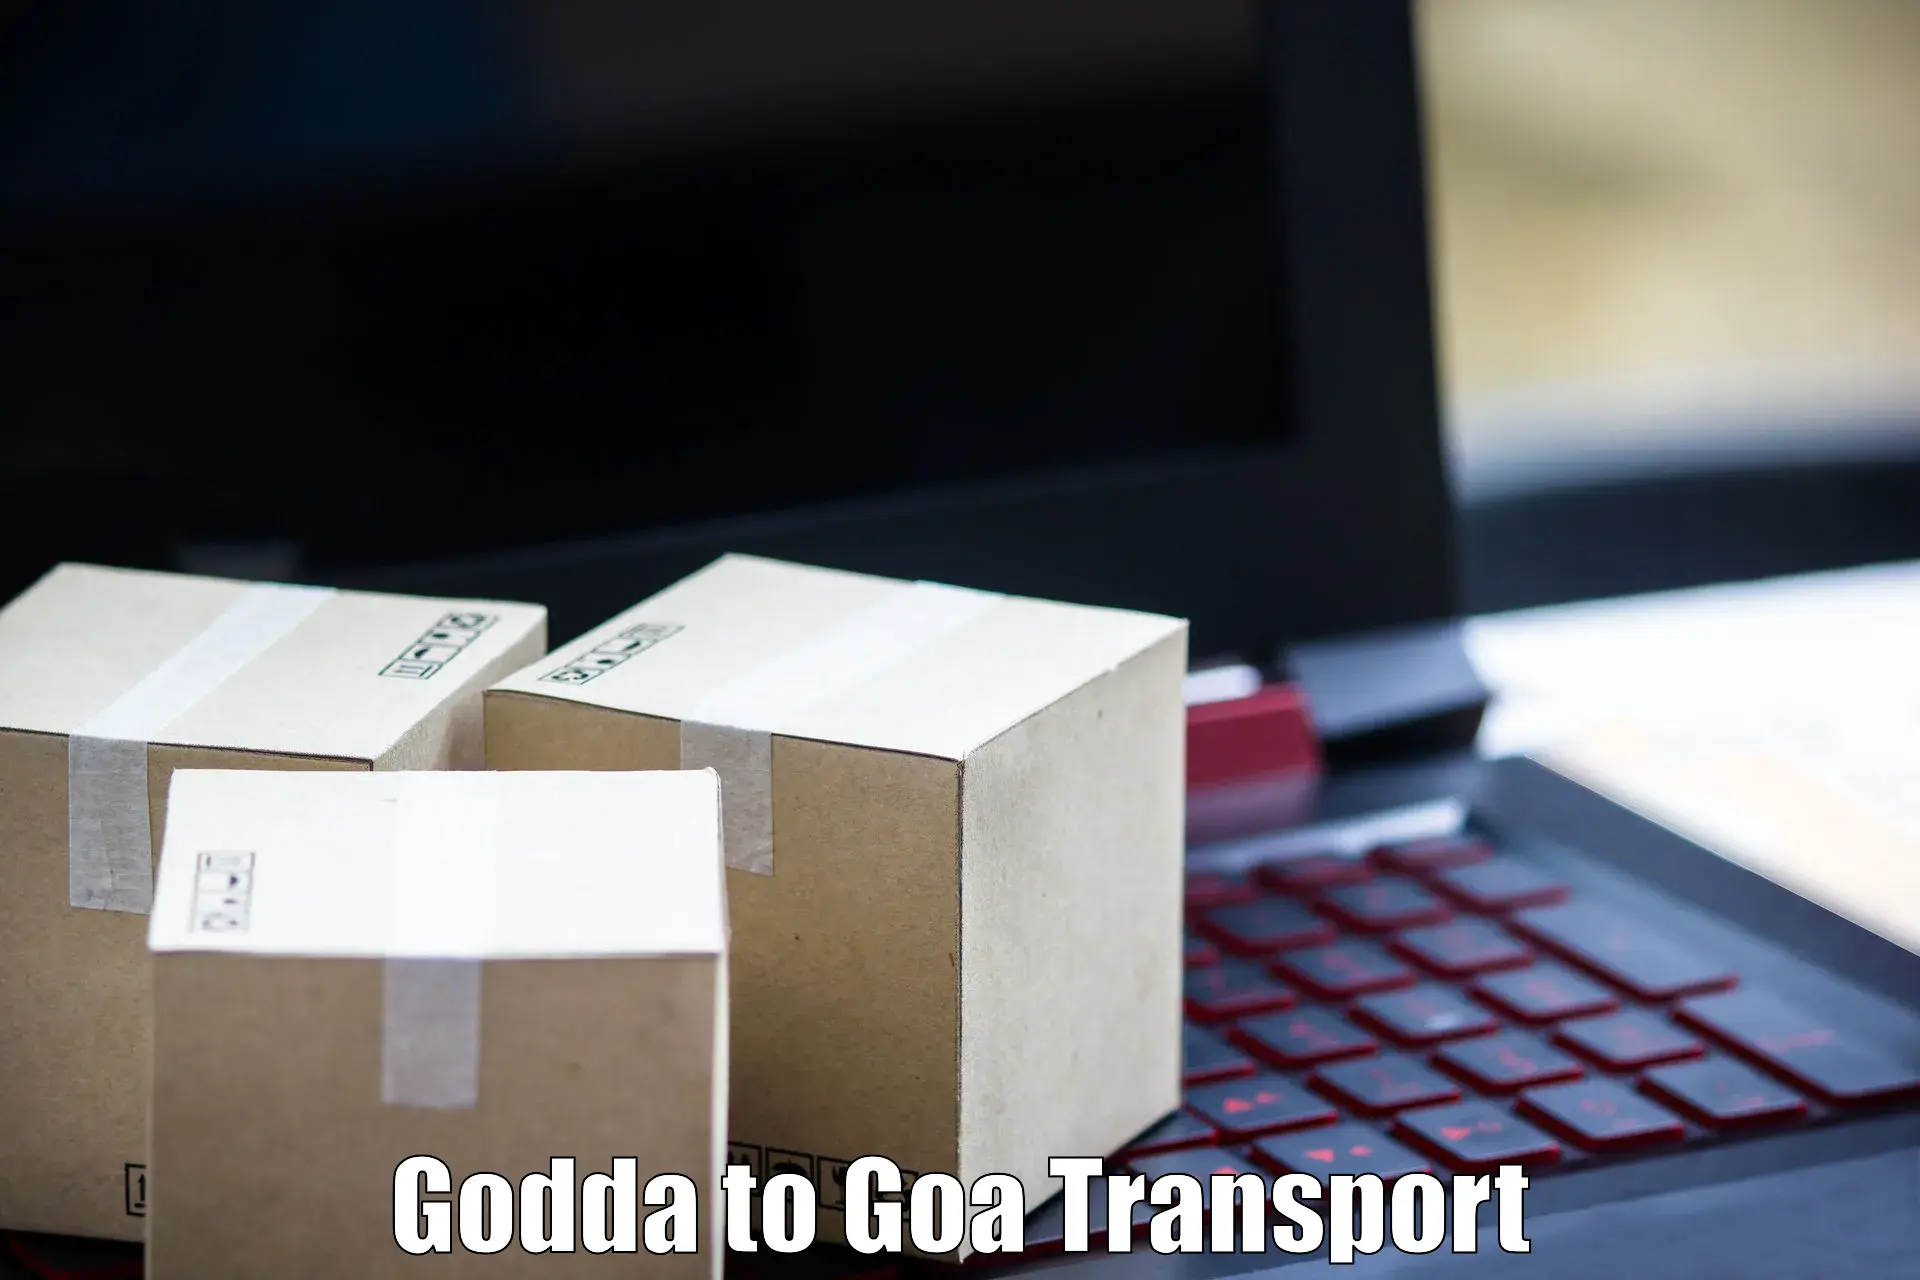 Transportation services Godda to Bicholim